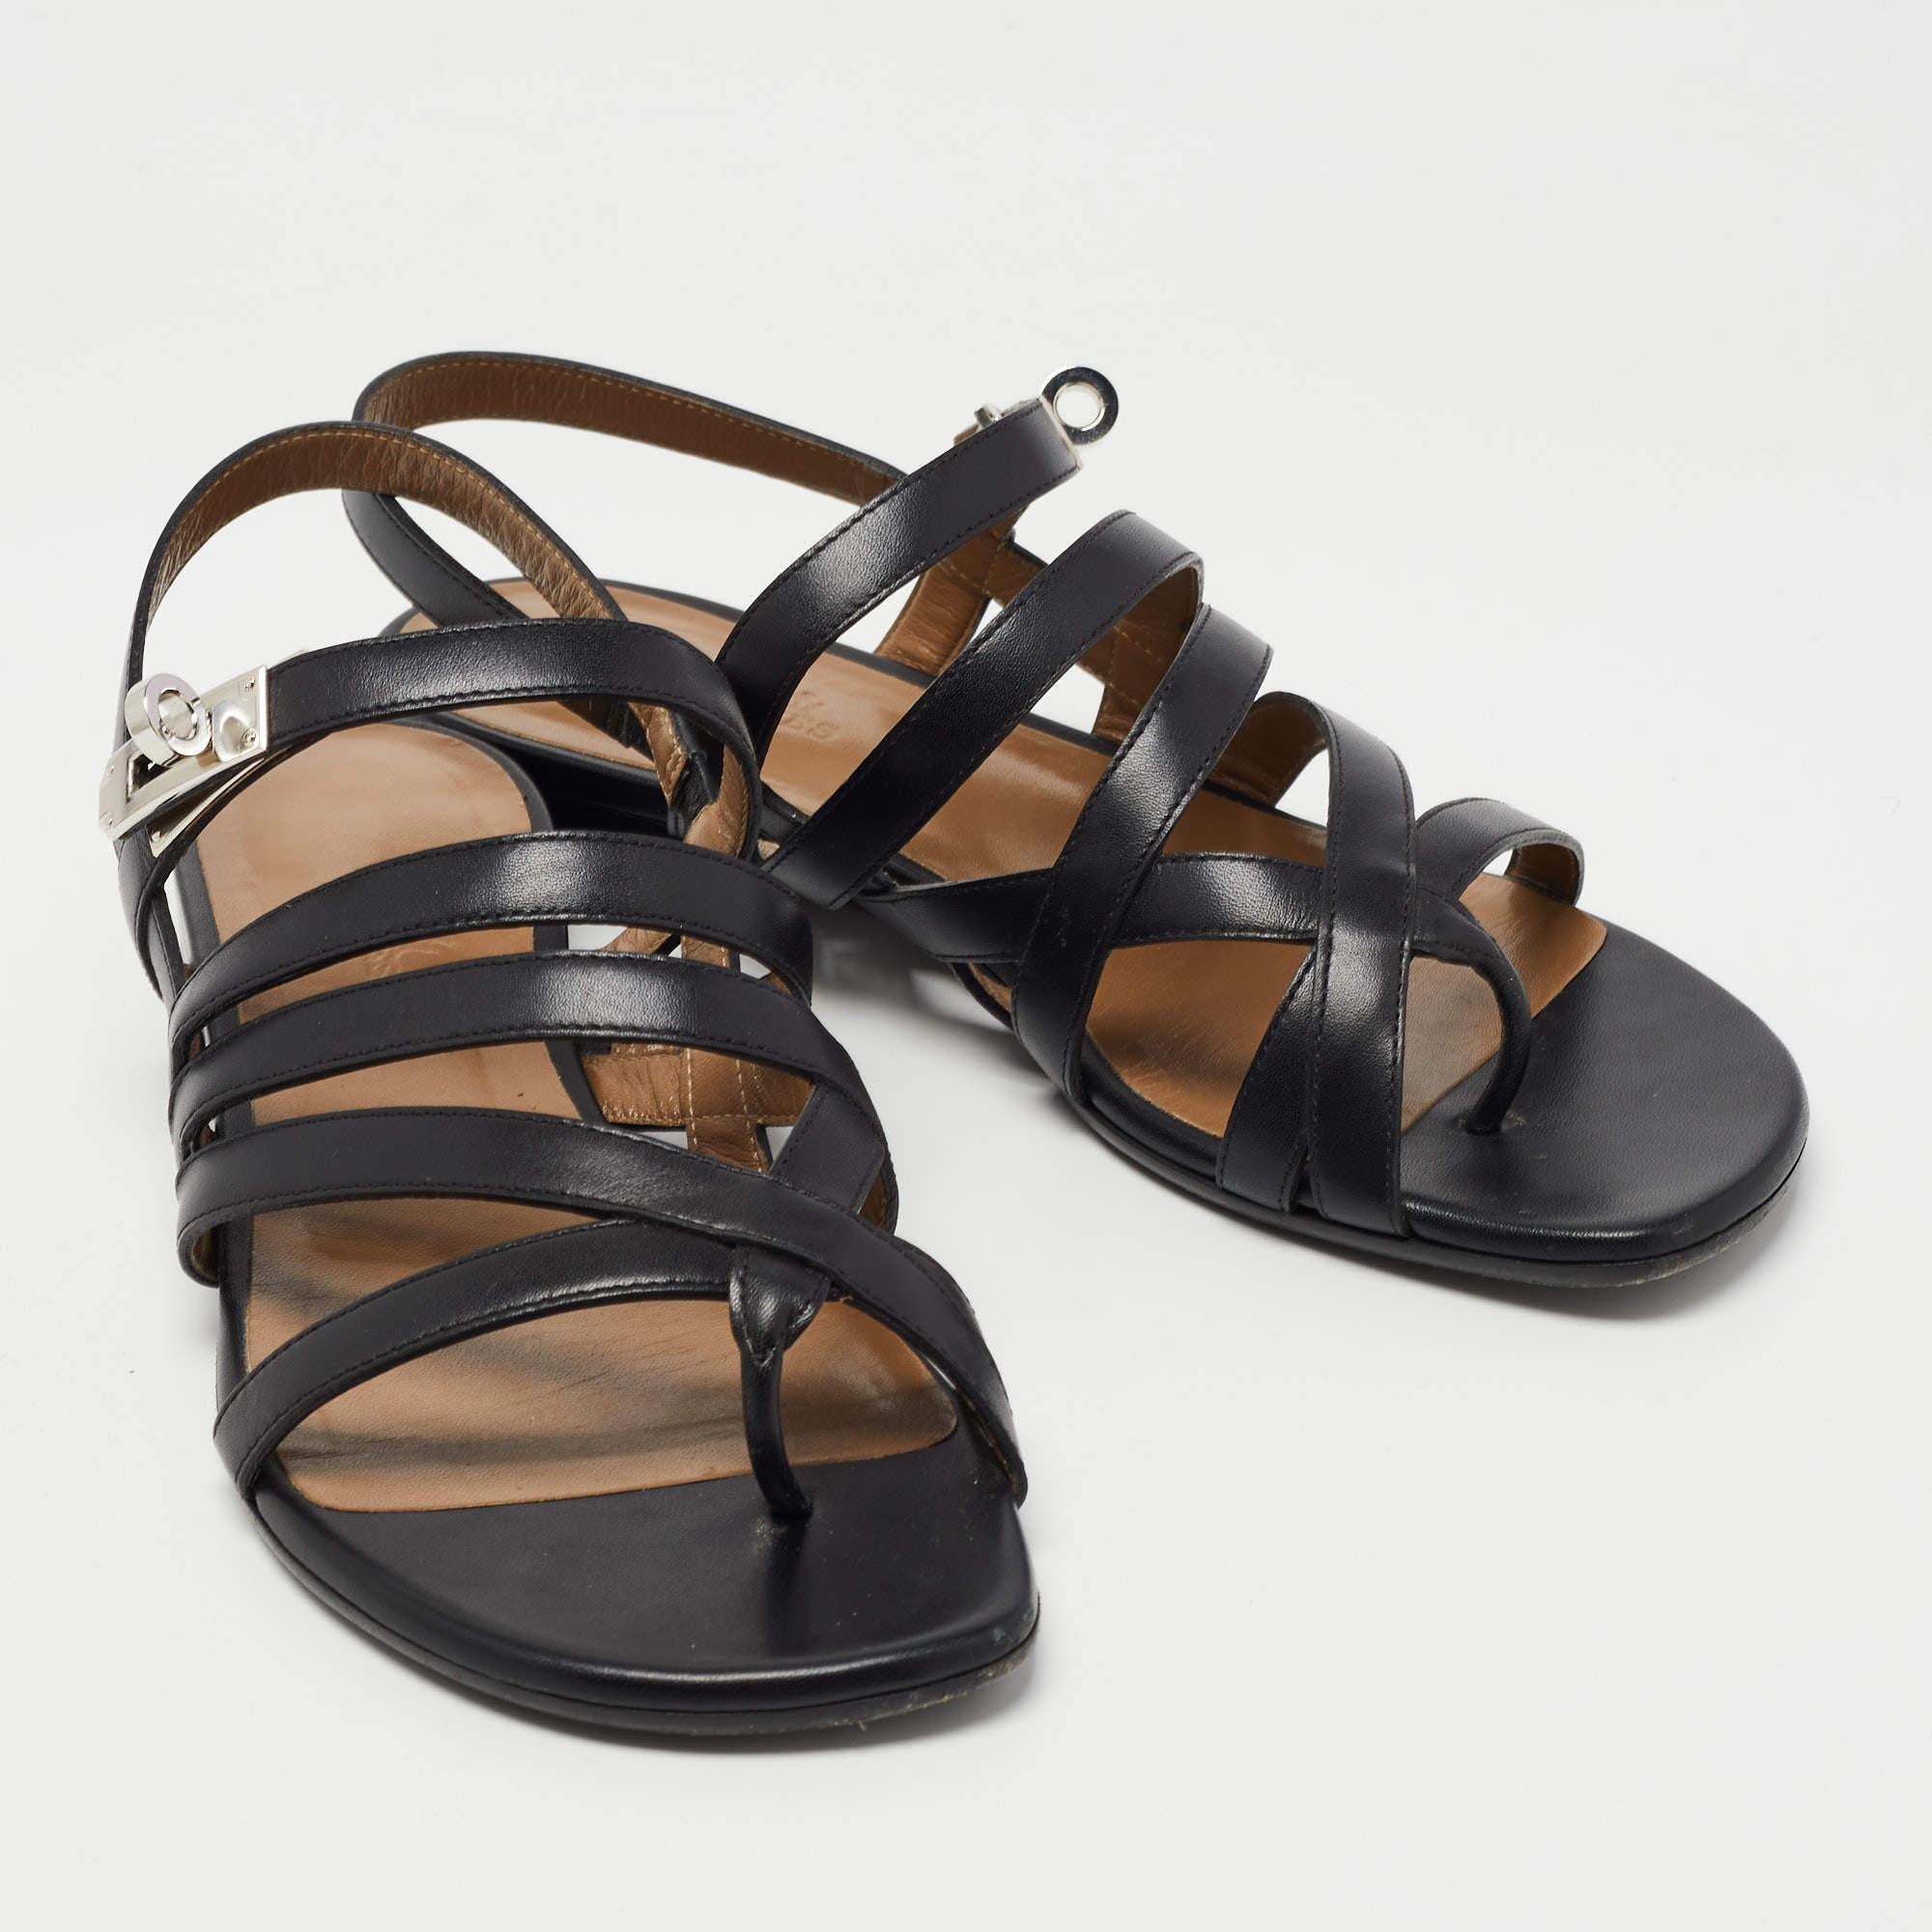 Hermes Black Leather Transat Slingback Sandals Size 37.5 1